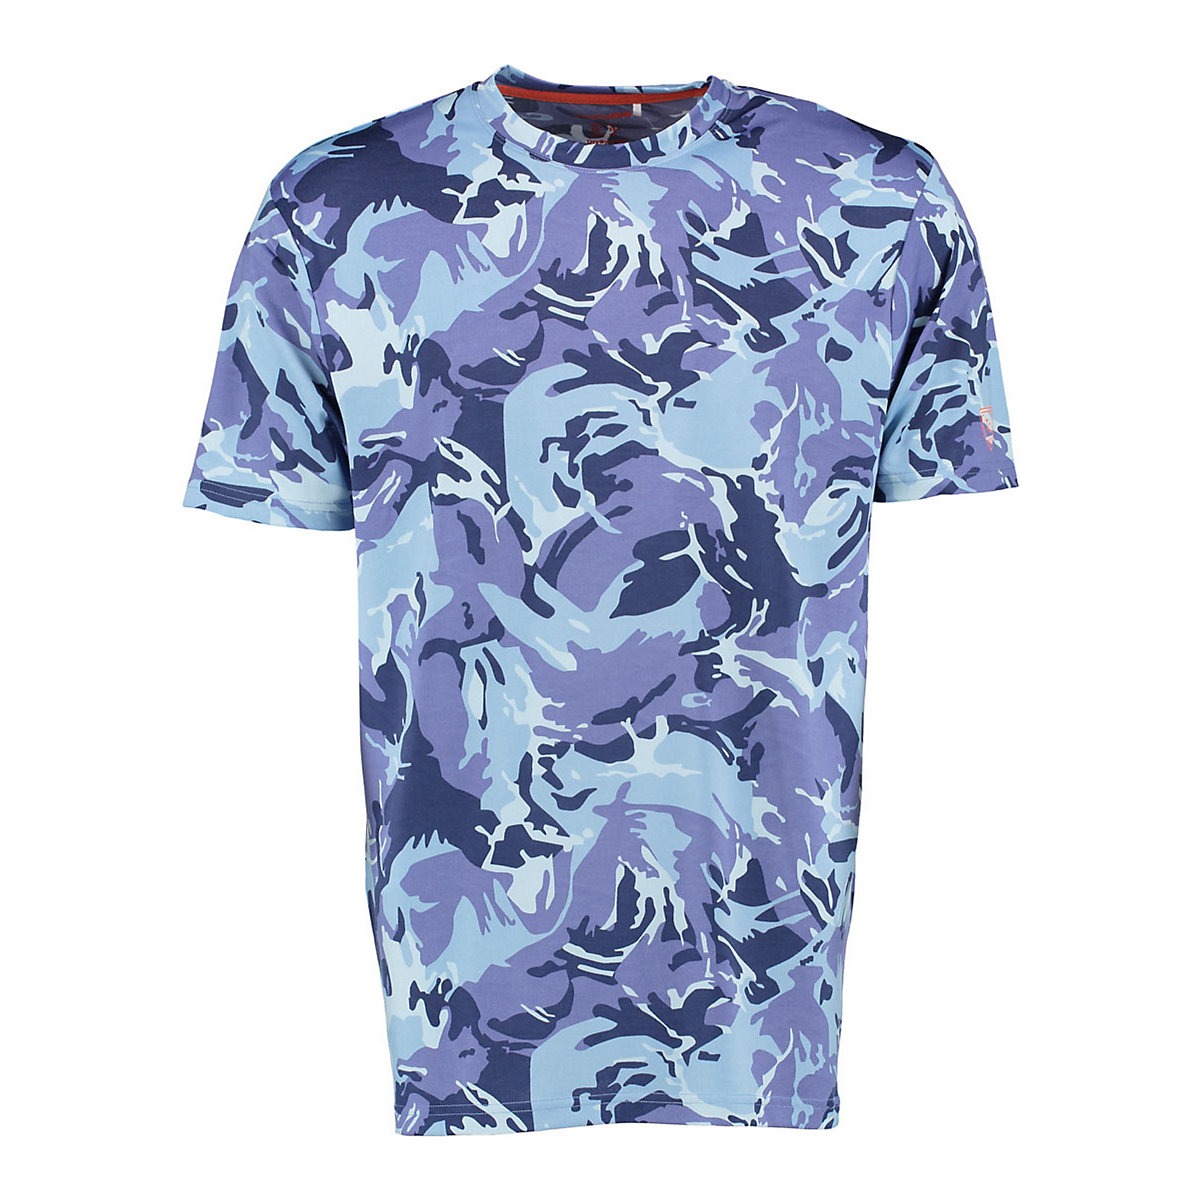 TOM COLLINS Herren Kurzarm T-Shirt mit Allover-Camouflage-Druck Okewa blau